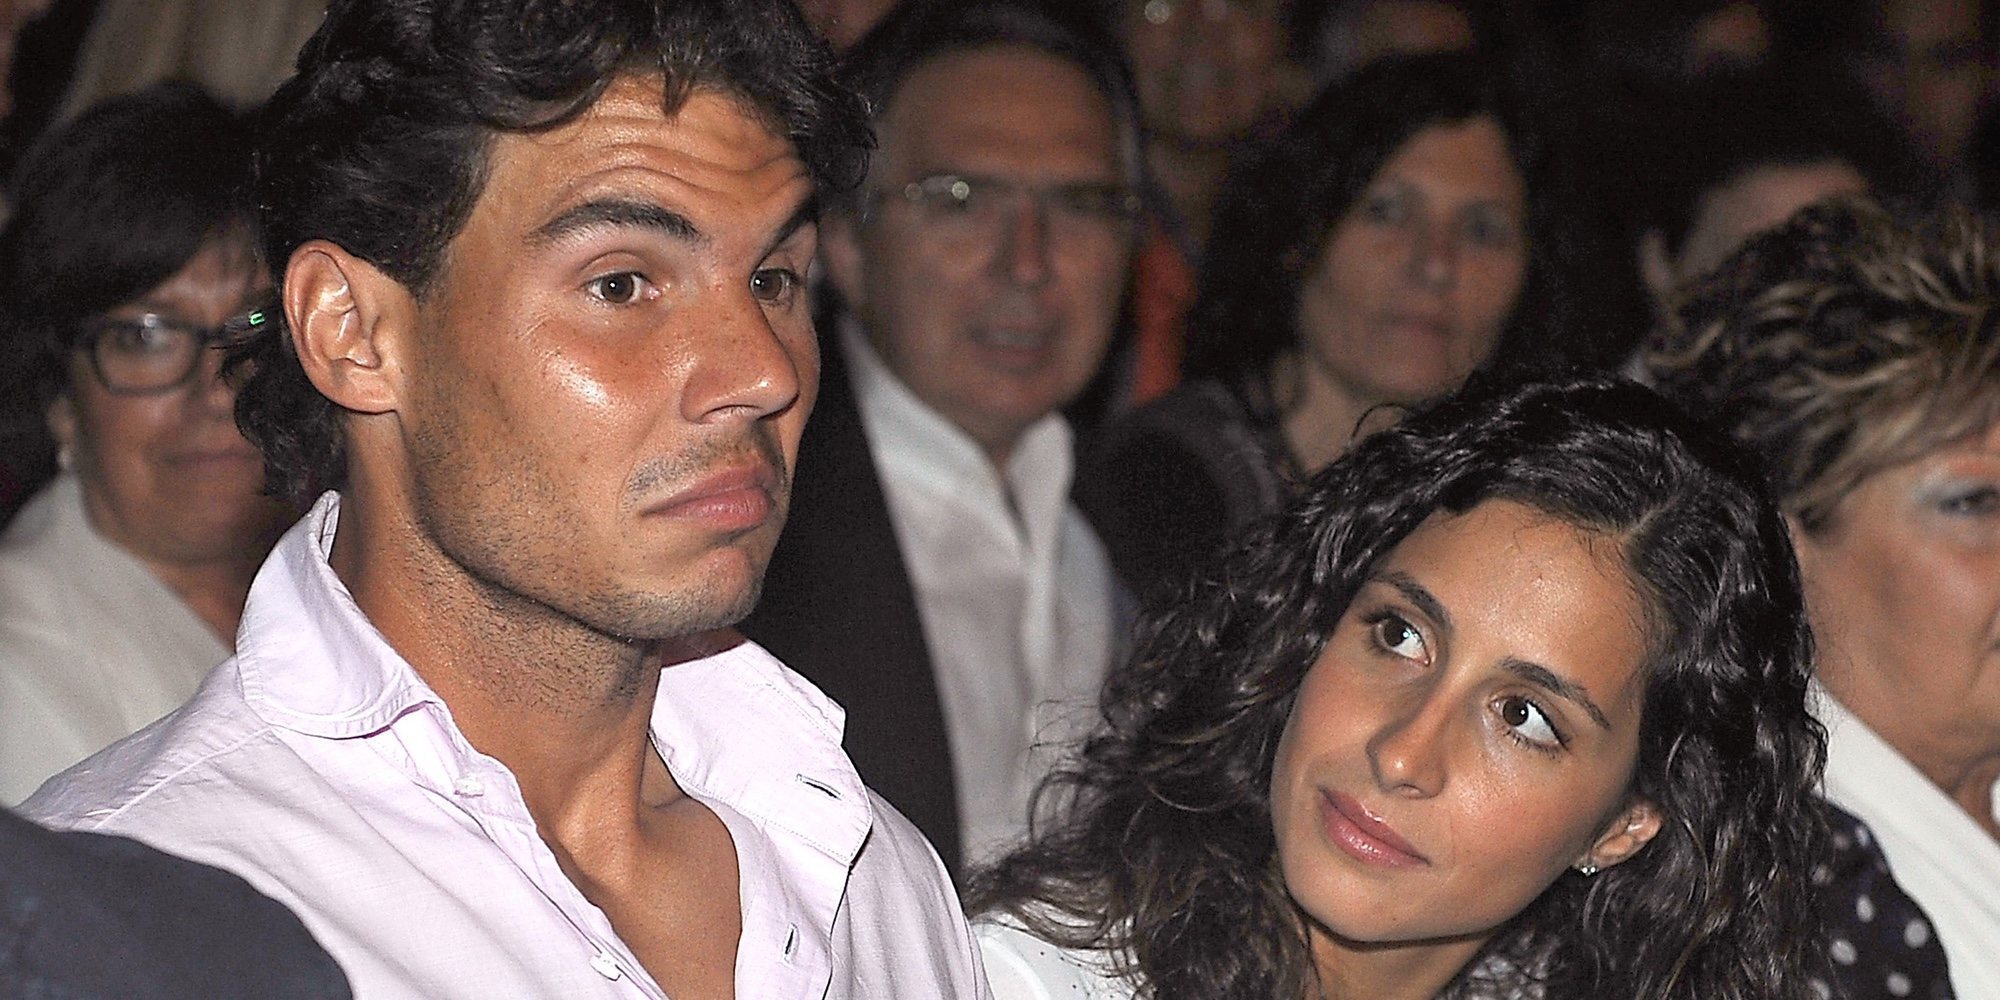 Rafa Nadal y Xisca Perelló se casarán en Mallorca en junio de 2019